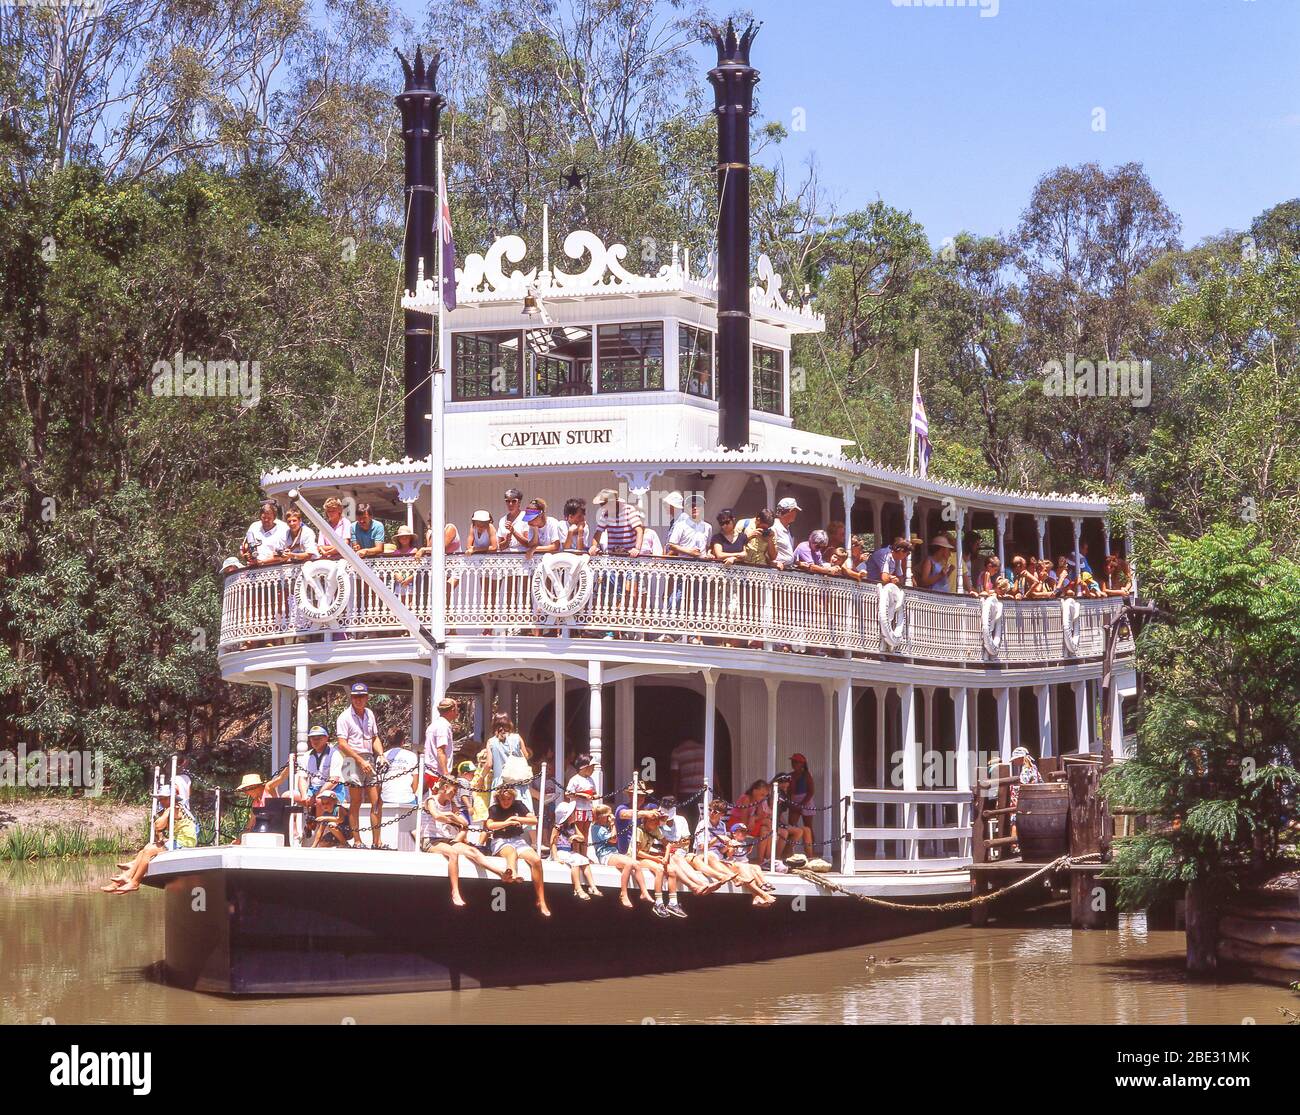 Der Dampfer "Kapitän Sturt" fährt im Dreamworld Theme Park, Coomera, City of Gold Coast, Queensland, Australien Stockfoto